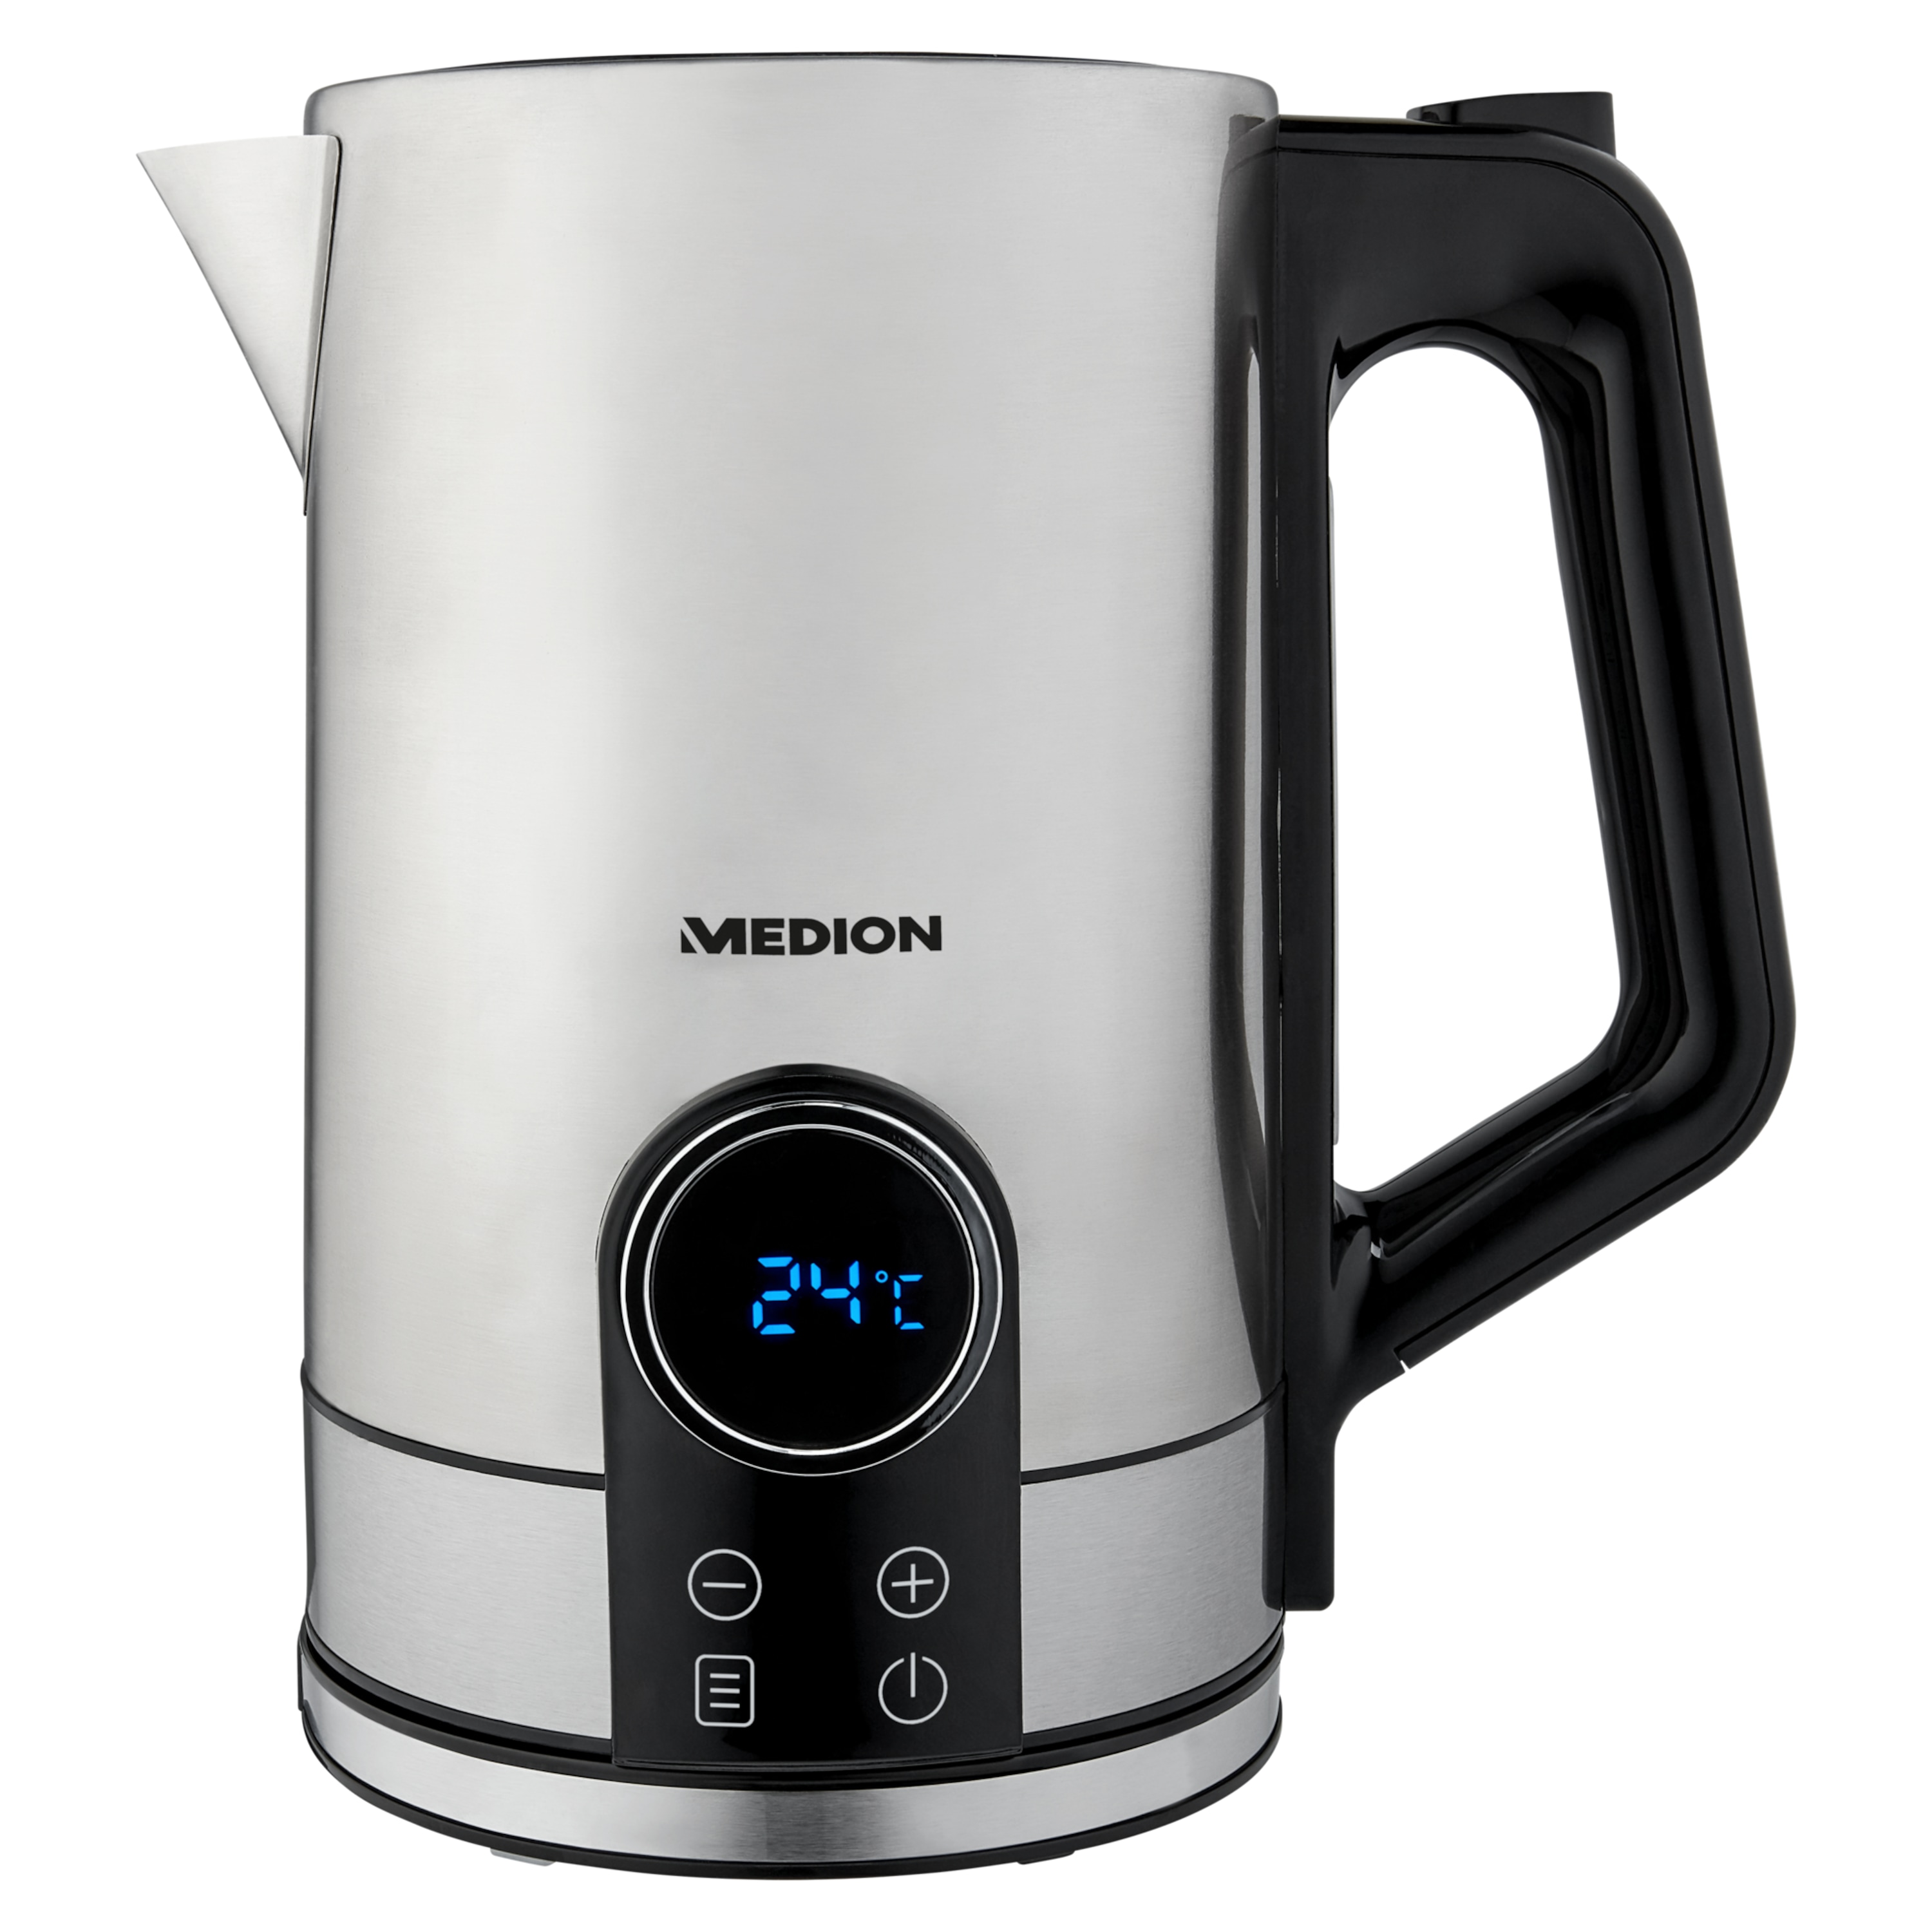 MEDION® Frühstücks-Set MD 10220, Set bestehend aus Wasserkocher, Toaster und Kaffeemaschine, modernes Design, großes LED-Display, hochwertiger Edelstahl